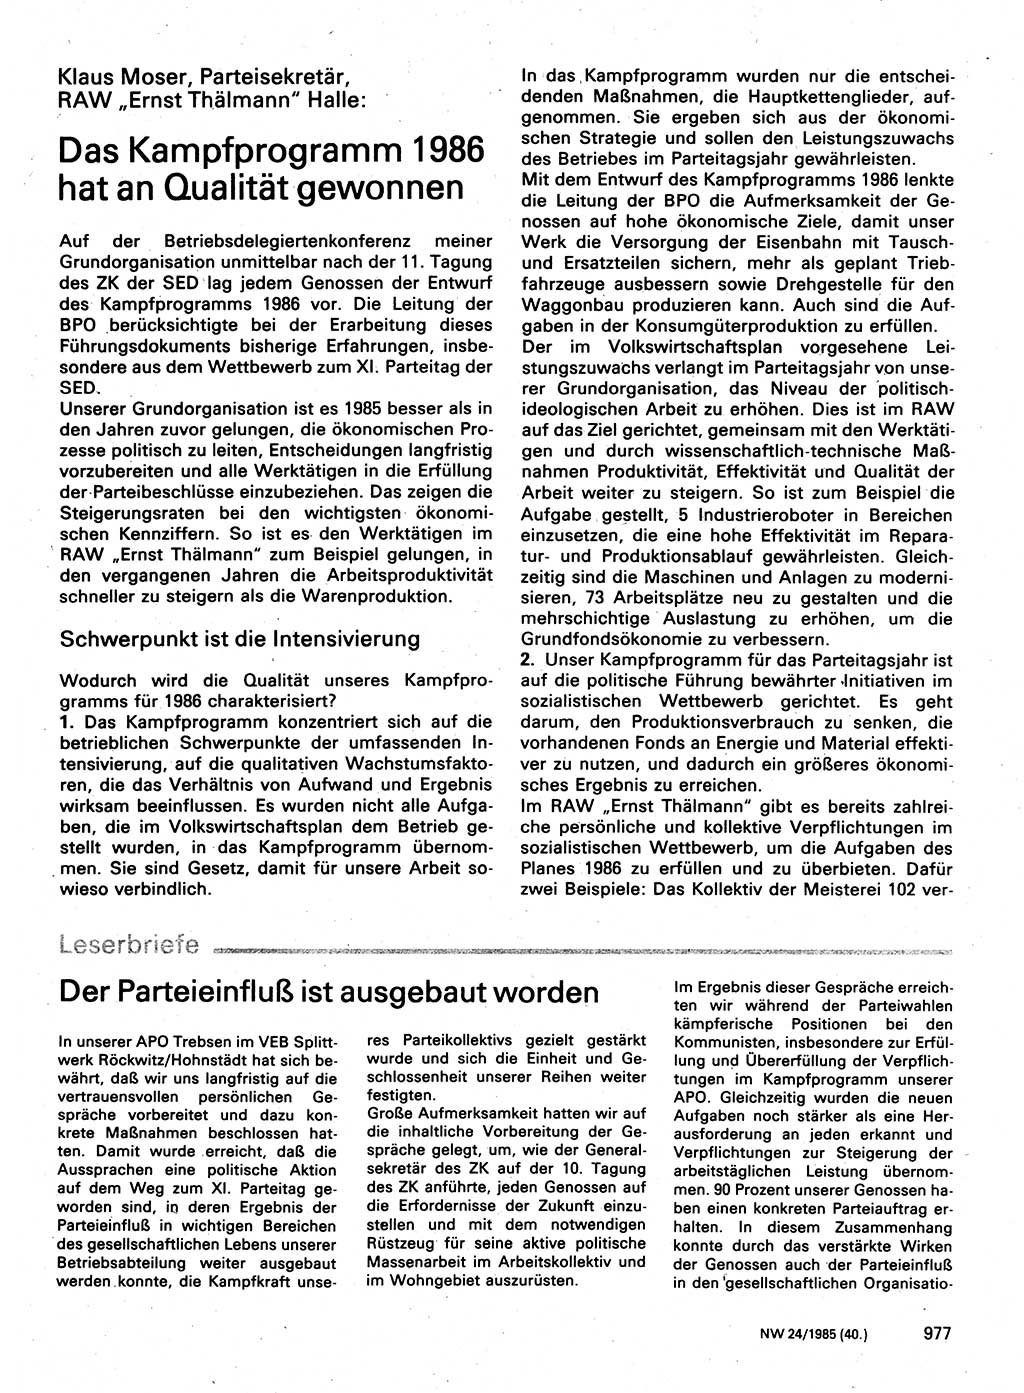 Neuer Weg (NW), Organ des Zentralkomitees (ZK) der SED (Sozialistische Einheitspartei Deutschlands) für Fragen des Parteilebens, 40. Jahrgang [Deutsche Demokratische Republik (DDR)] 1985, Seite 977 (NW ZK SED DDR 1985, S. 977)